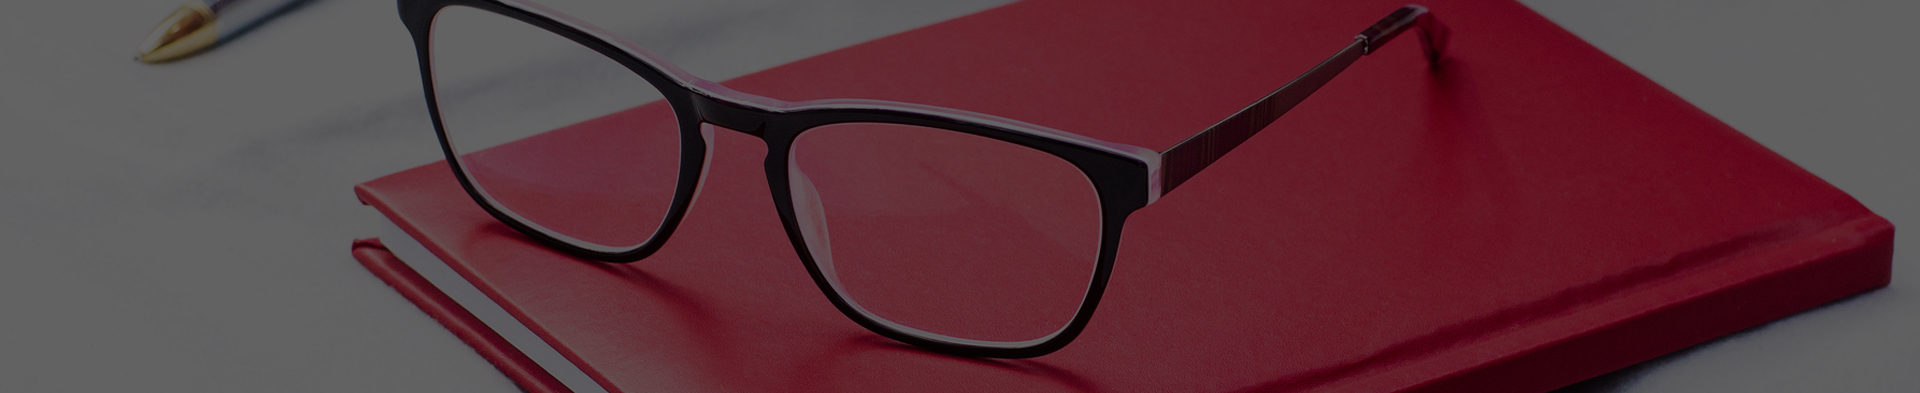 Nové dioptrické brýle za příspěvek od zaměstnavatele